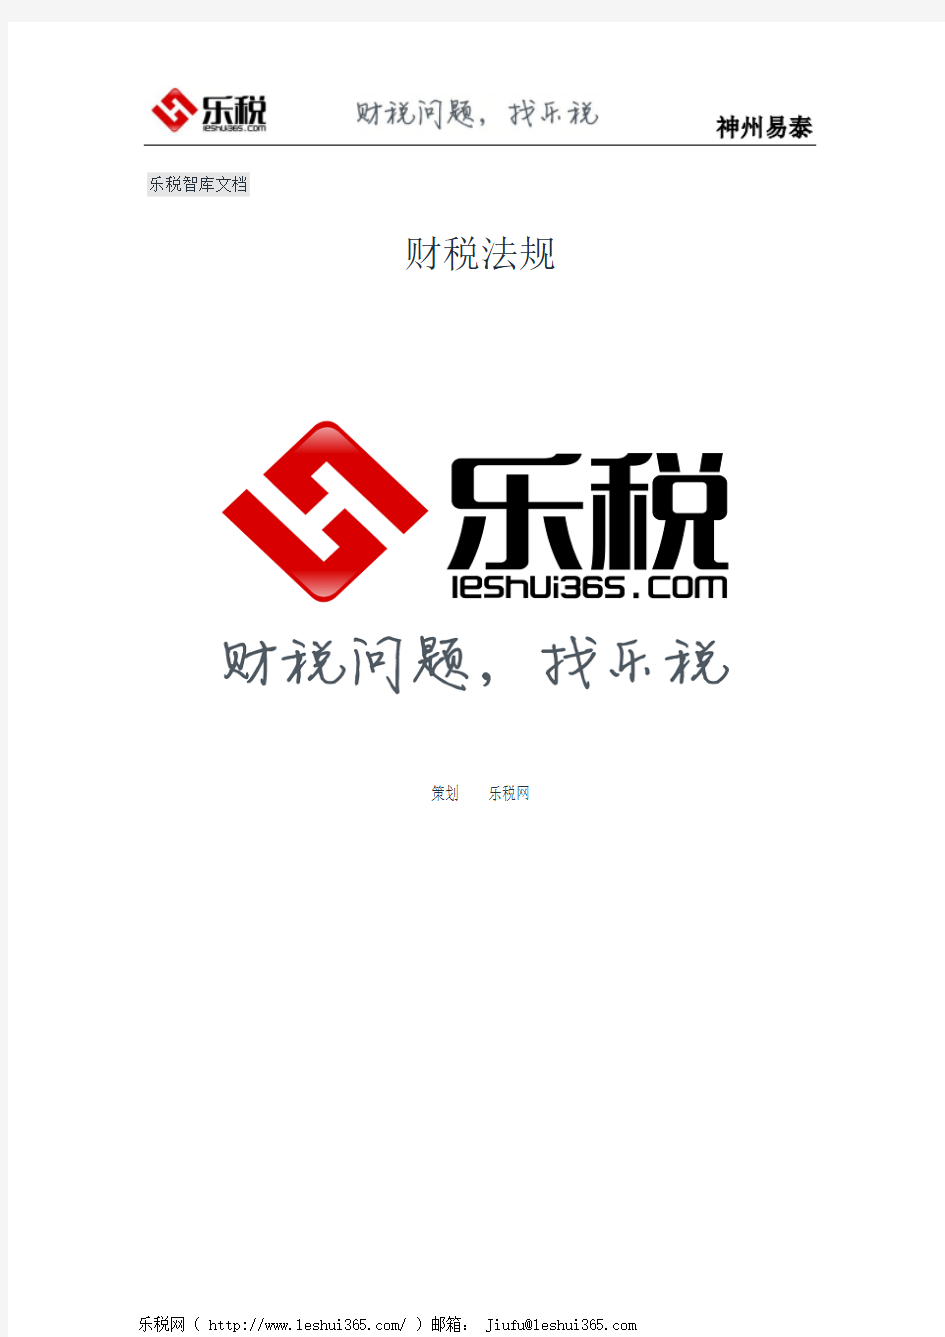 天津市国家税务局关于实行涉税业务“同城通办”的公告